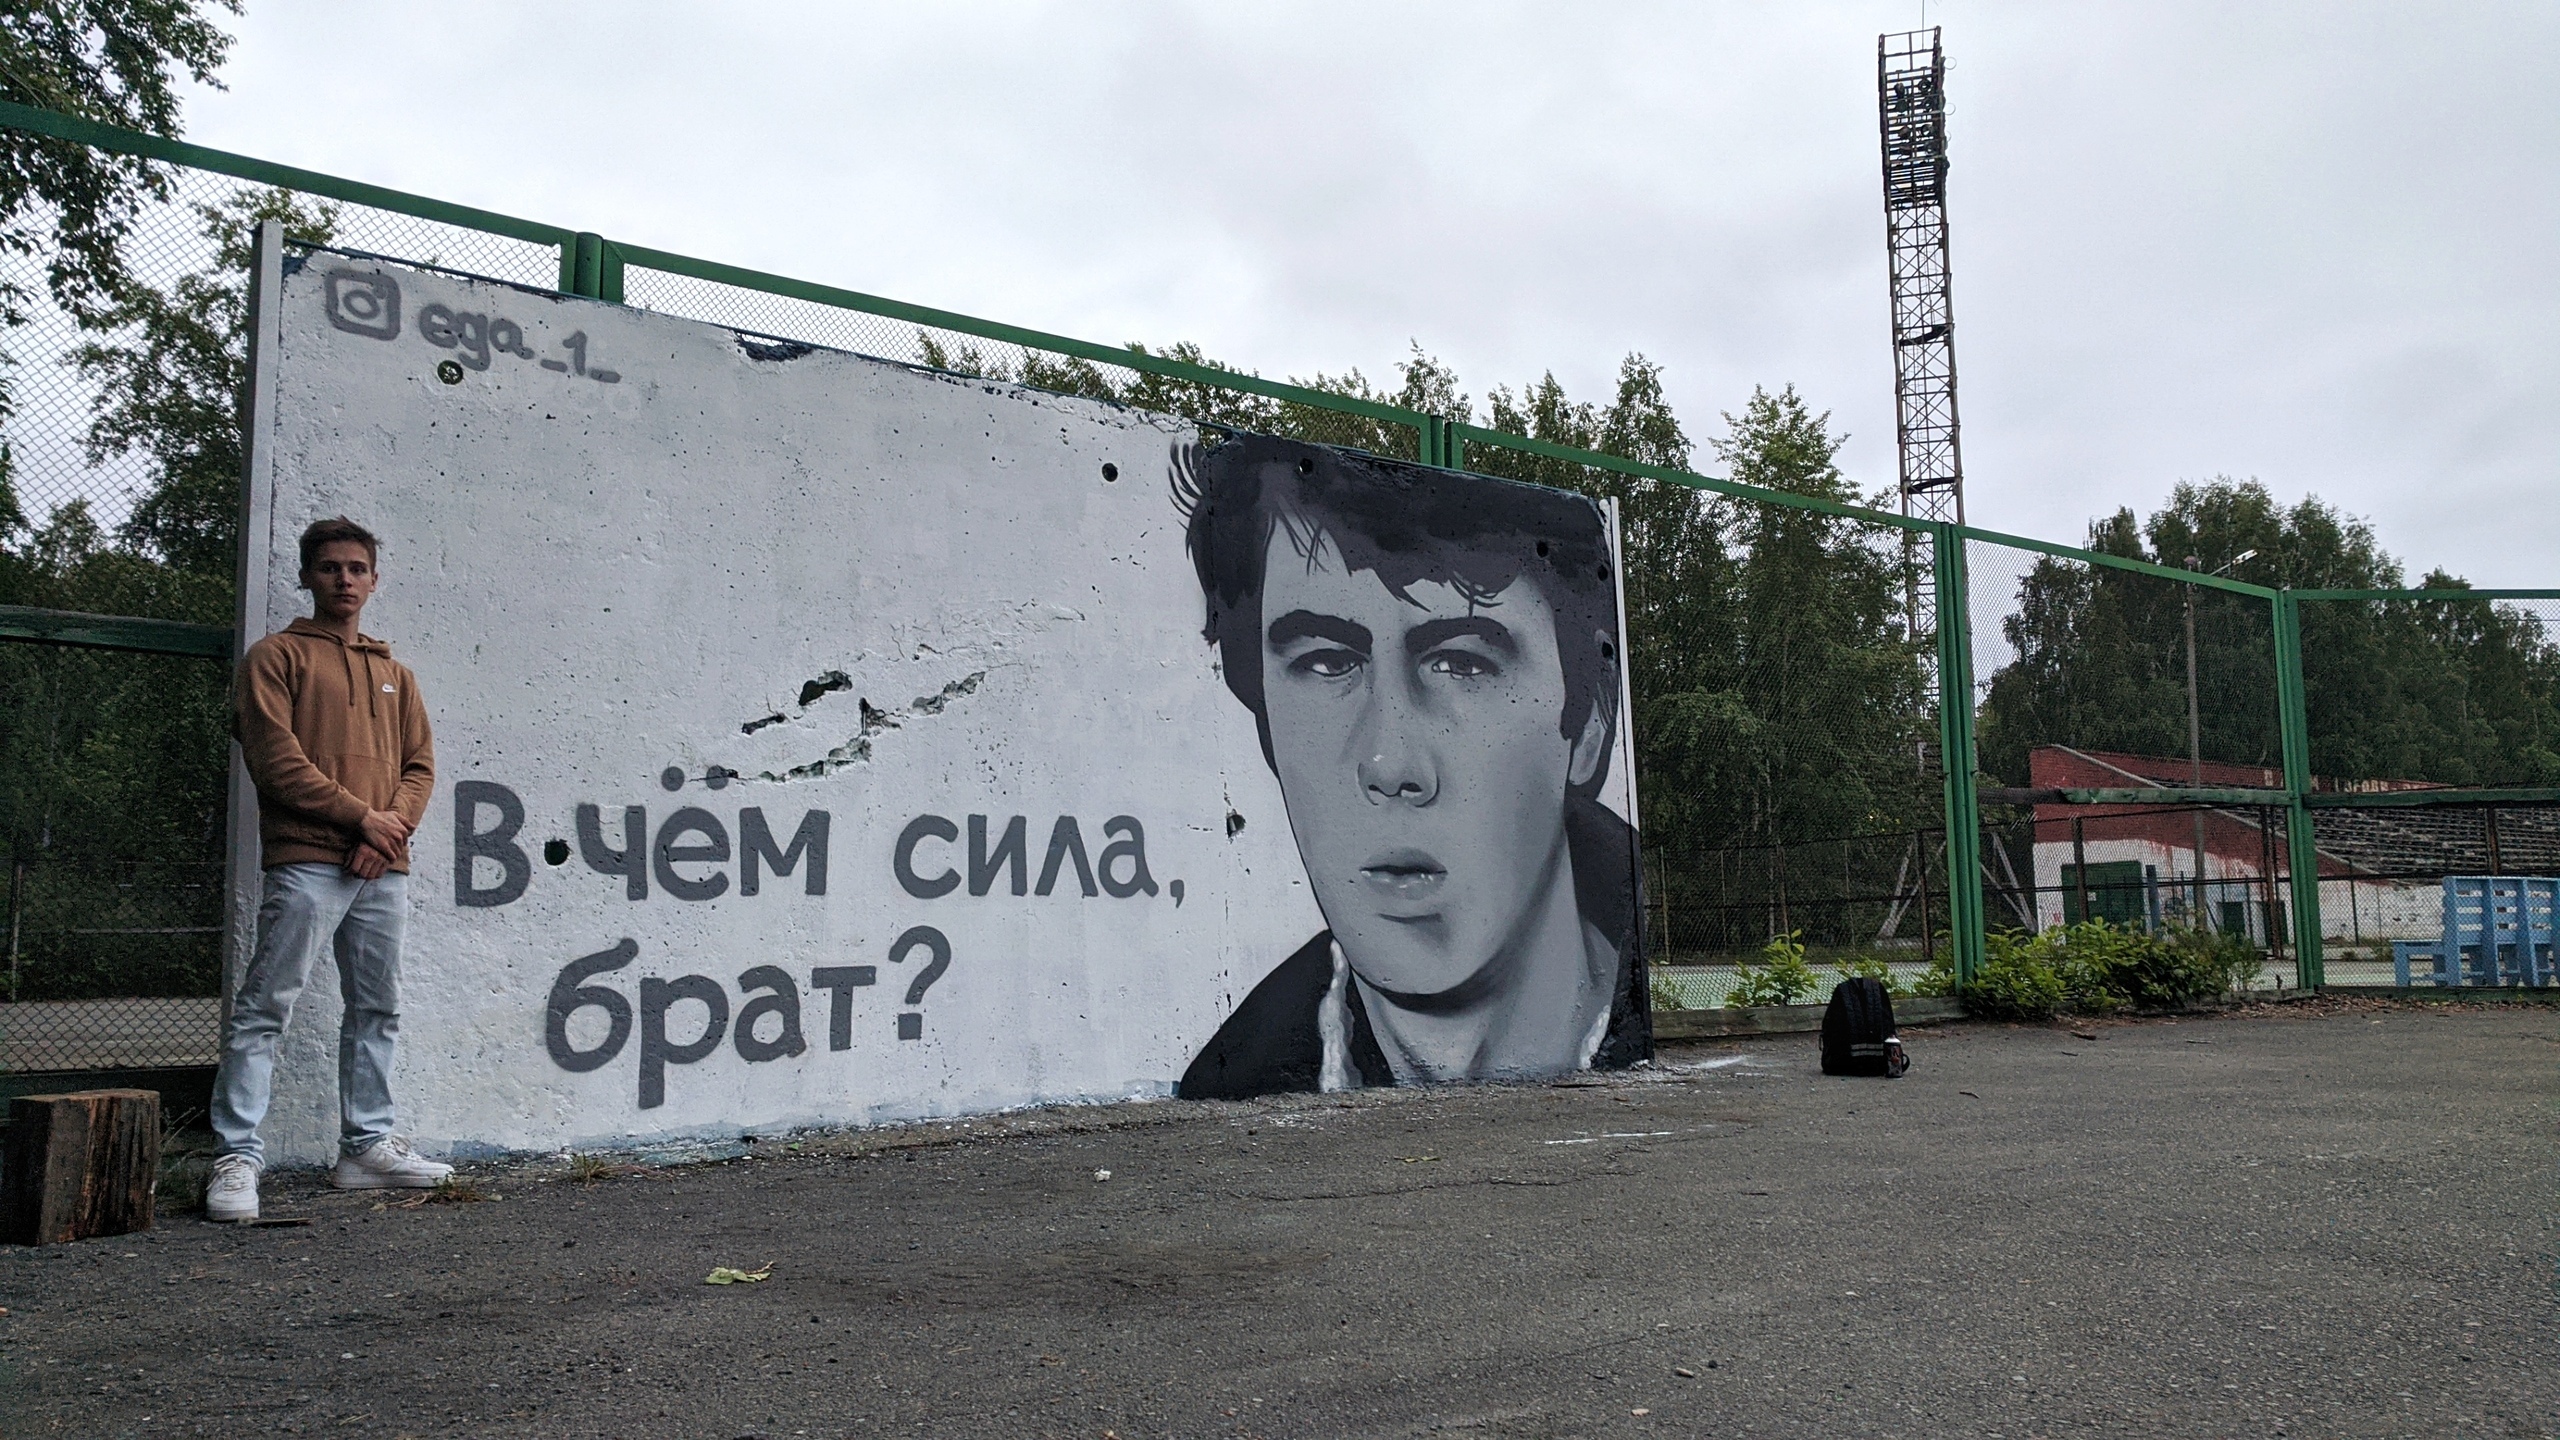 «В чем сила, брат?» Стрит-арт с фразой и портретом Бодрова появился в Асбесте